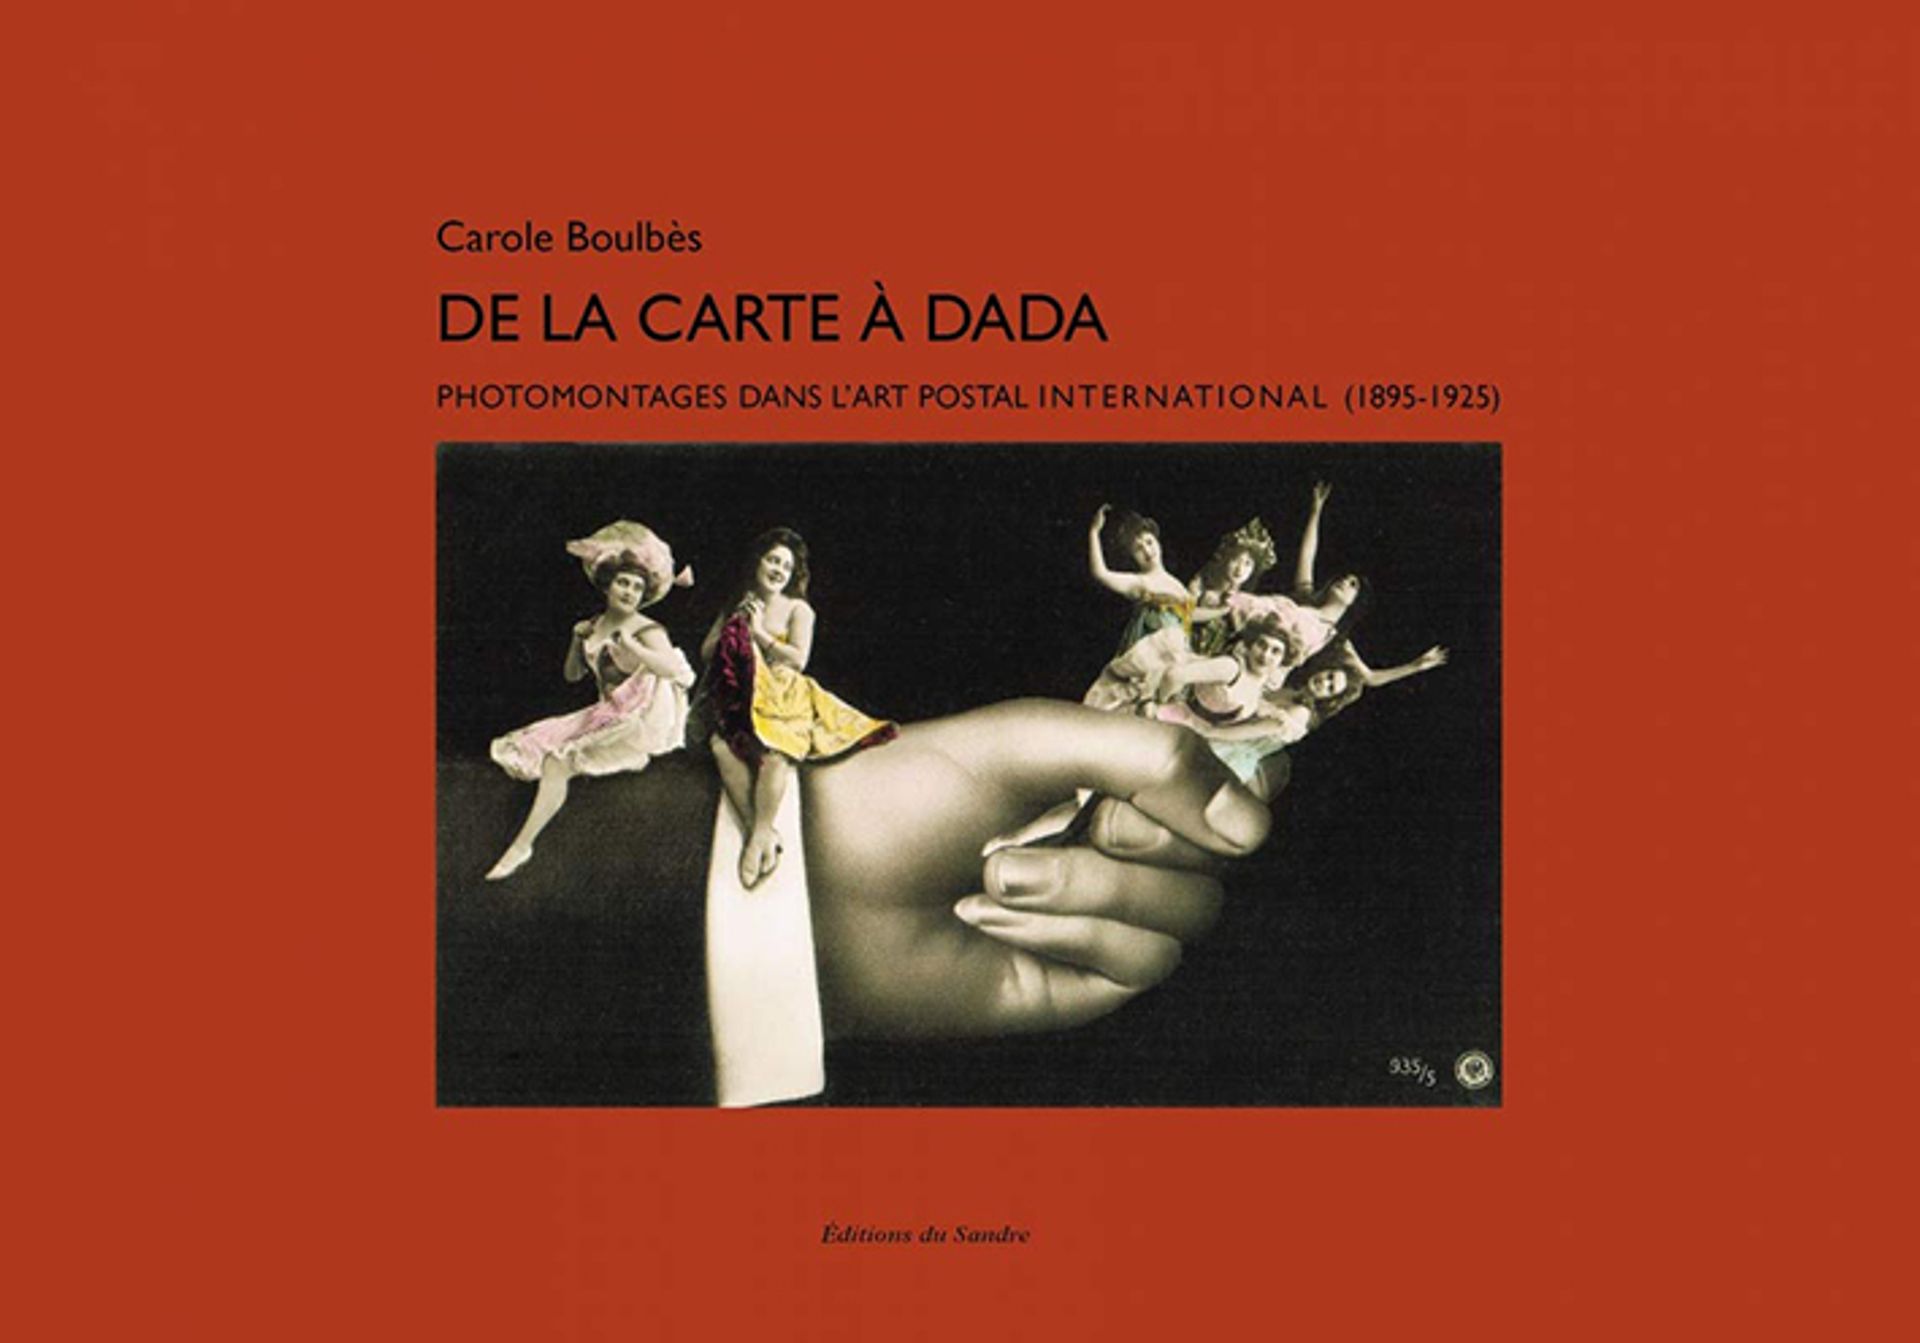 Carole Boulbès, De la carte à Dada. Photomontages dans l’art postal international (1895-1925). Saint-Loup-de-Naud, Éditions du Sandre, 2020, 312 pages, 35 euros.